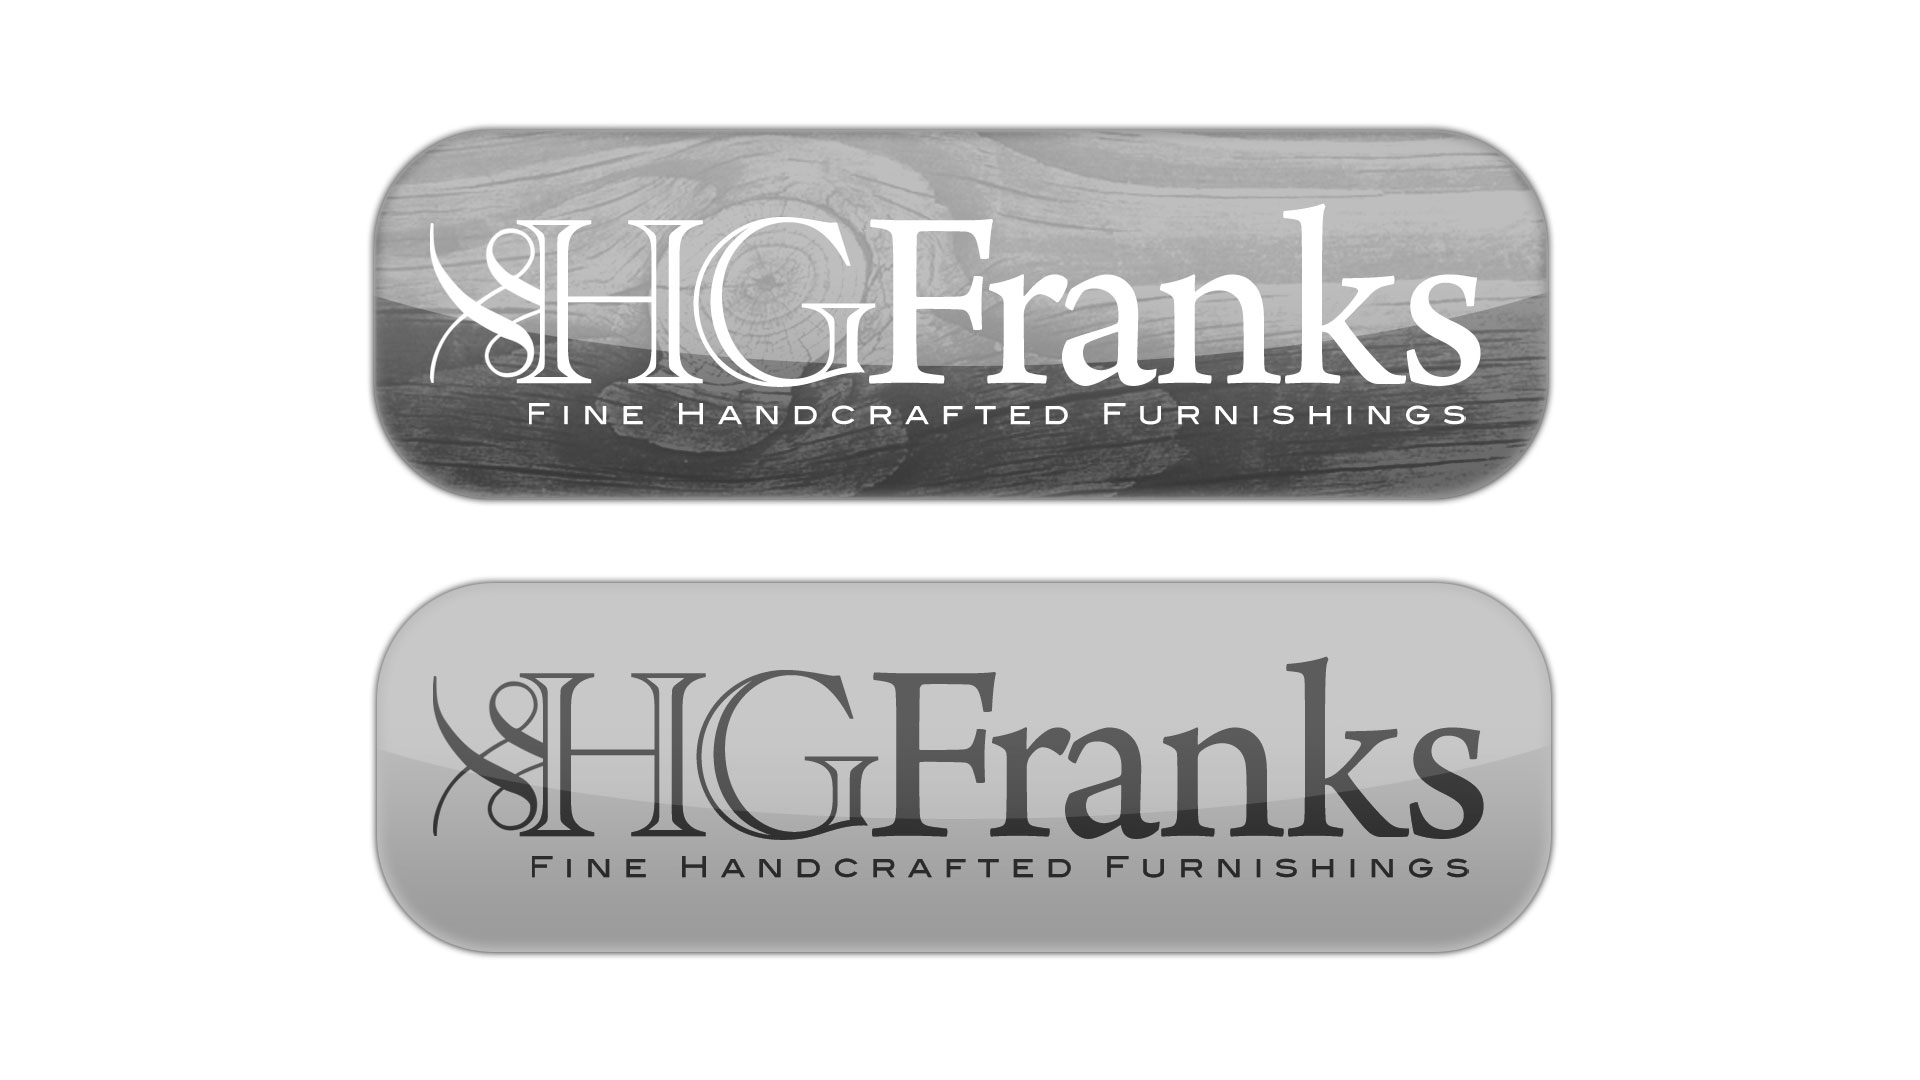 HG Franks